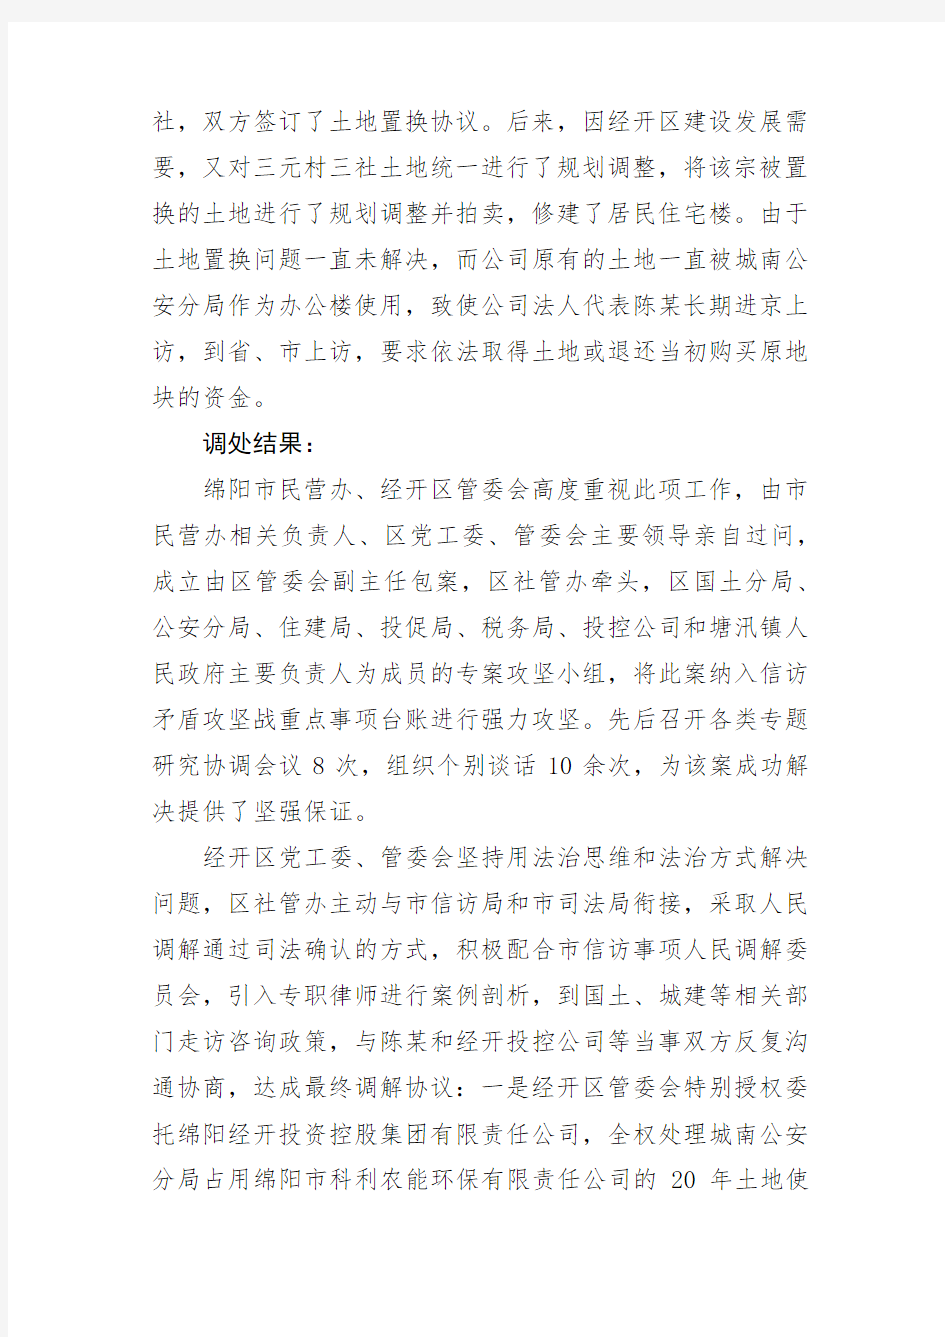 四川省保护民营企业合法权益十大典型案例